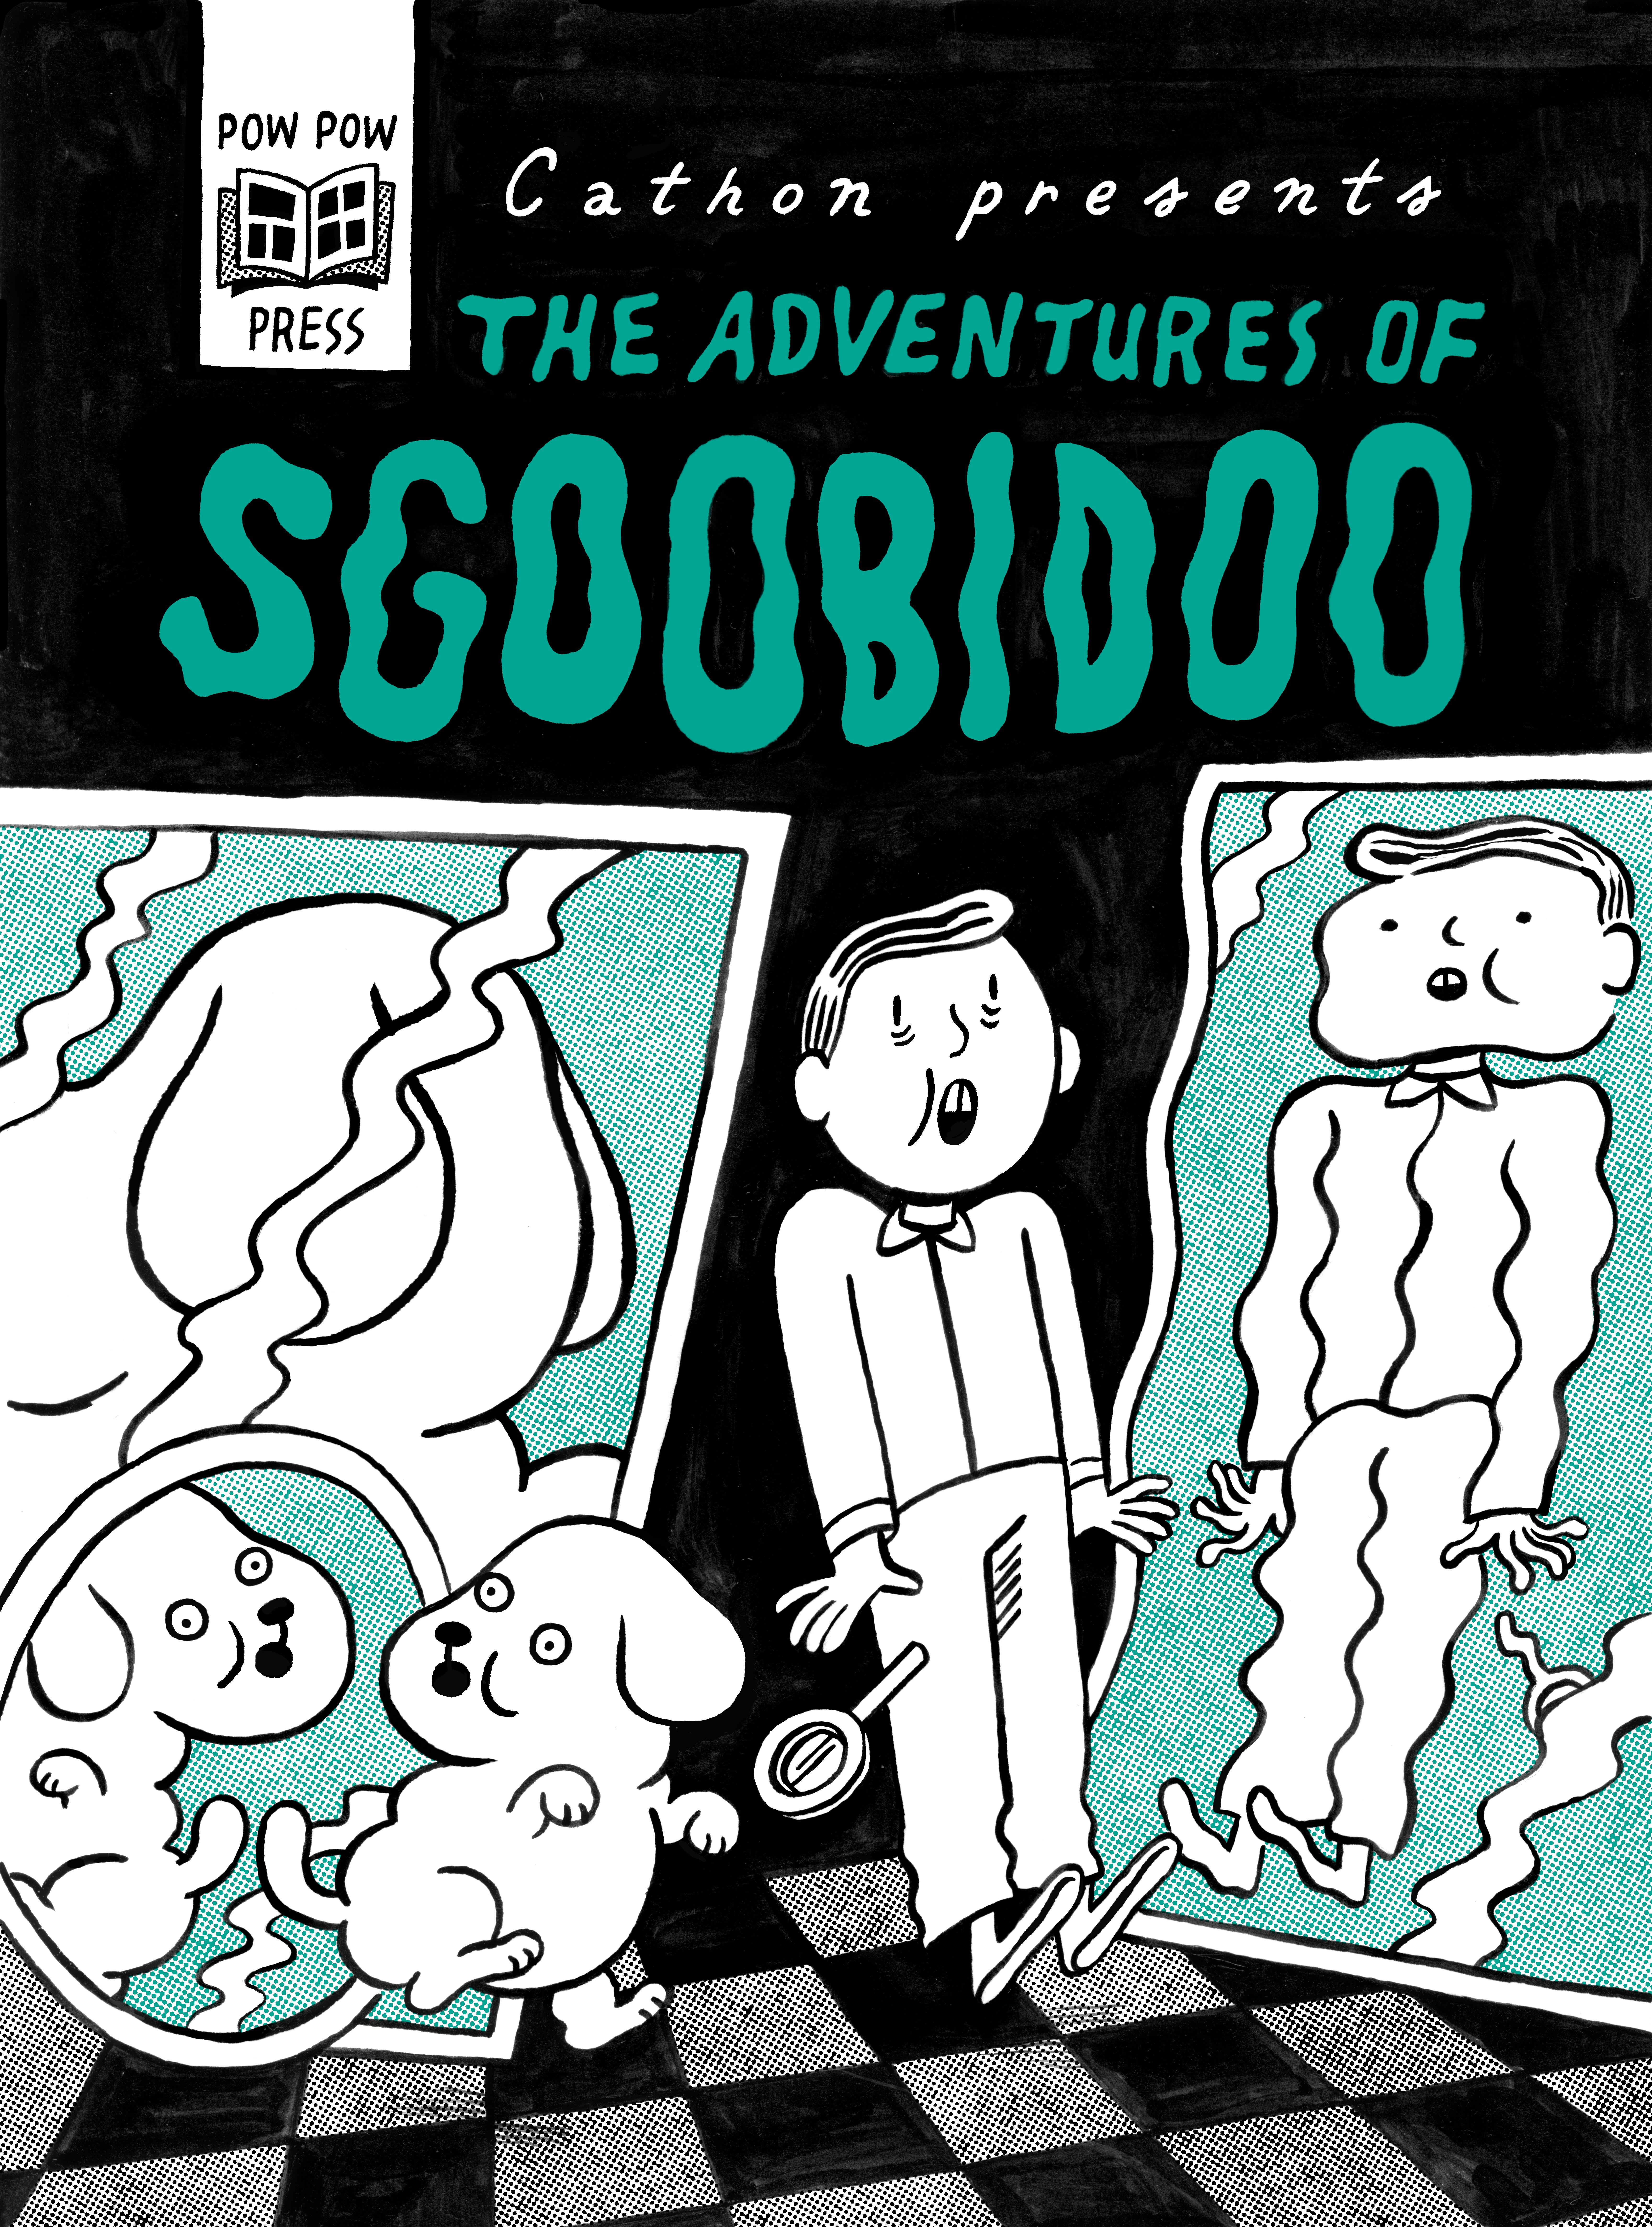 The Adventures of Sgoobidoo